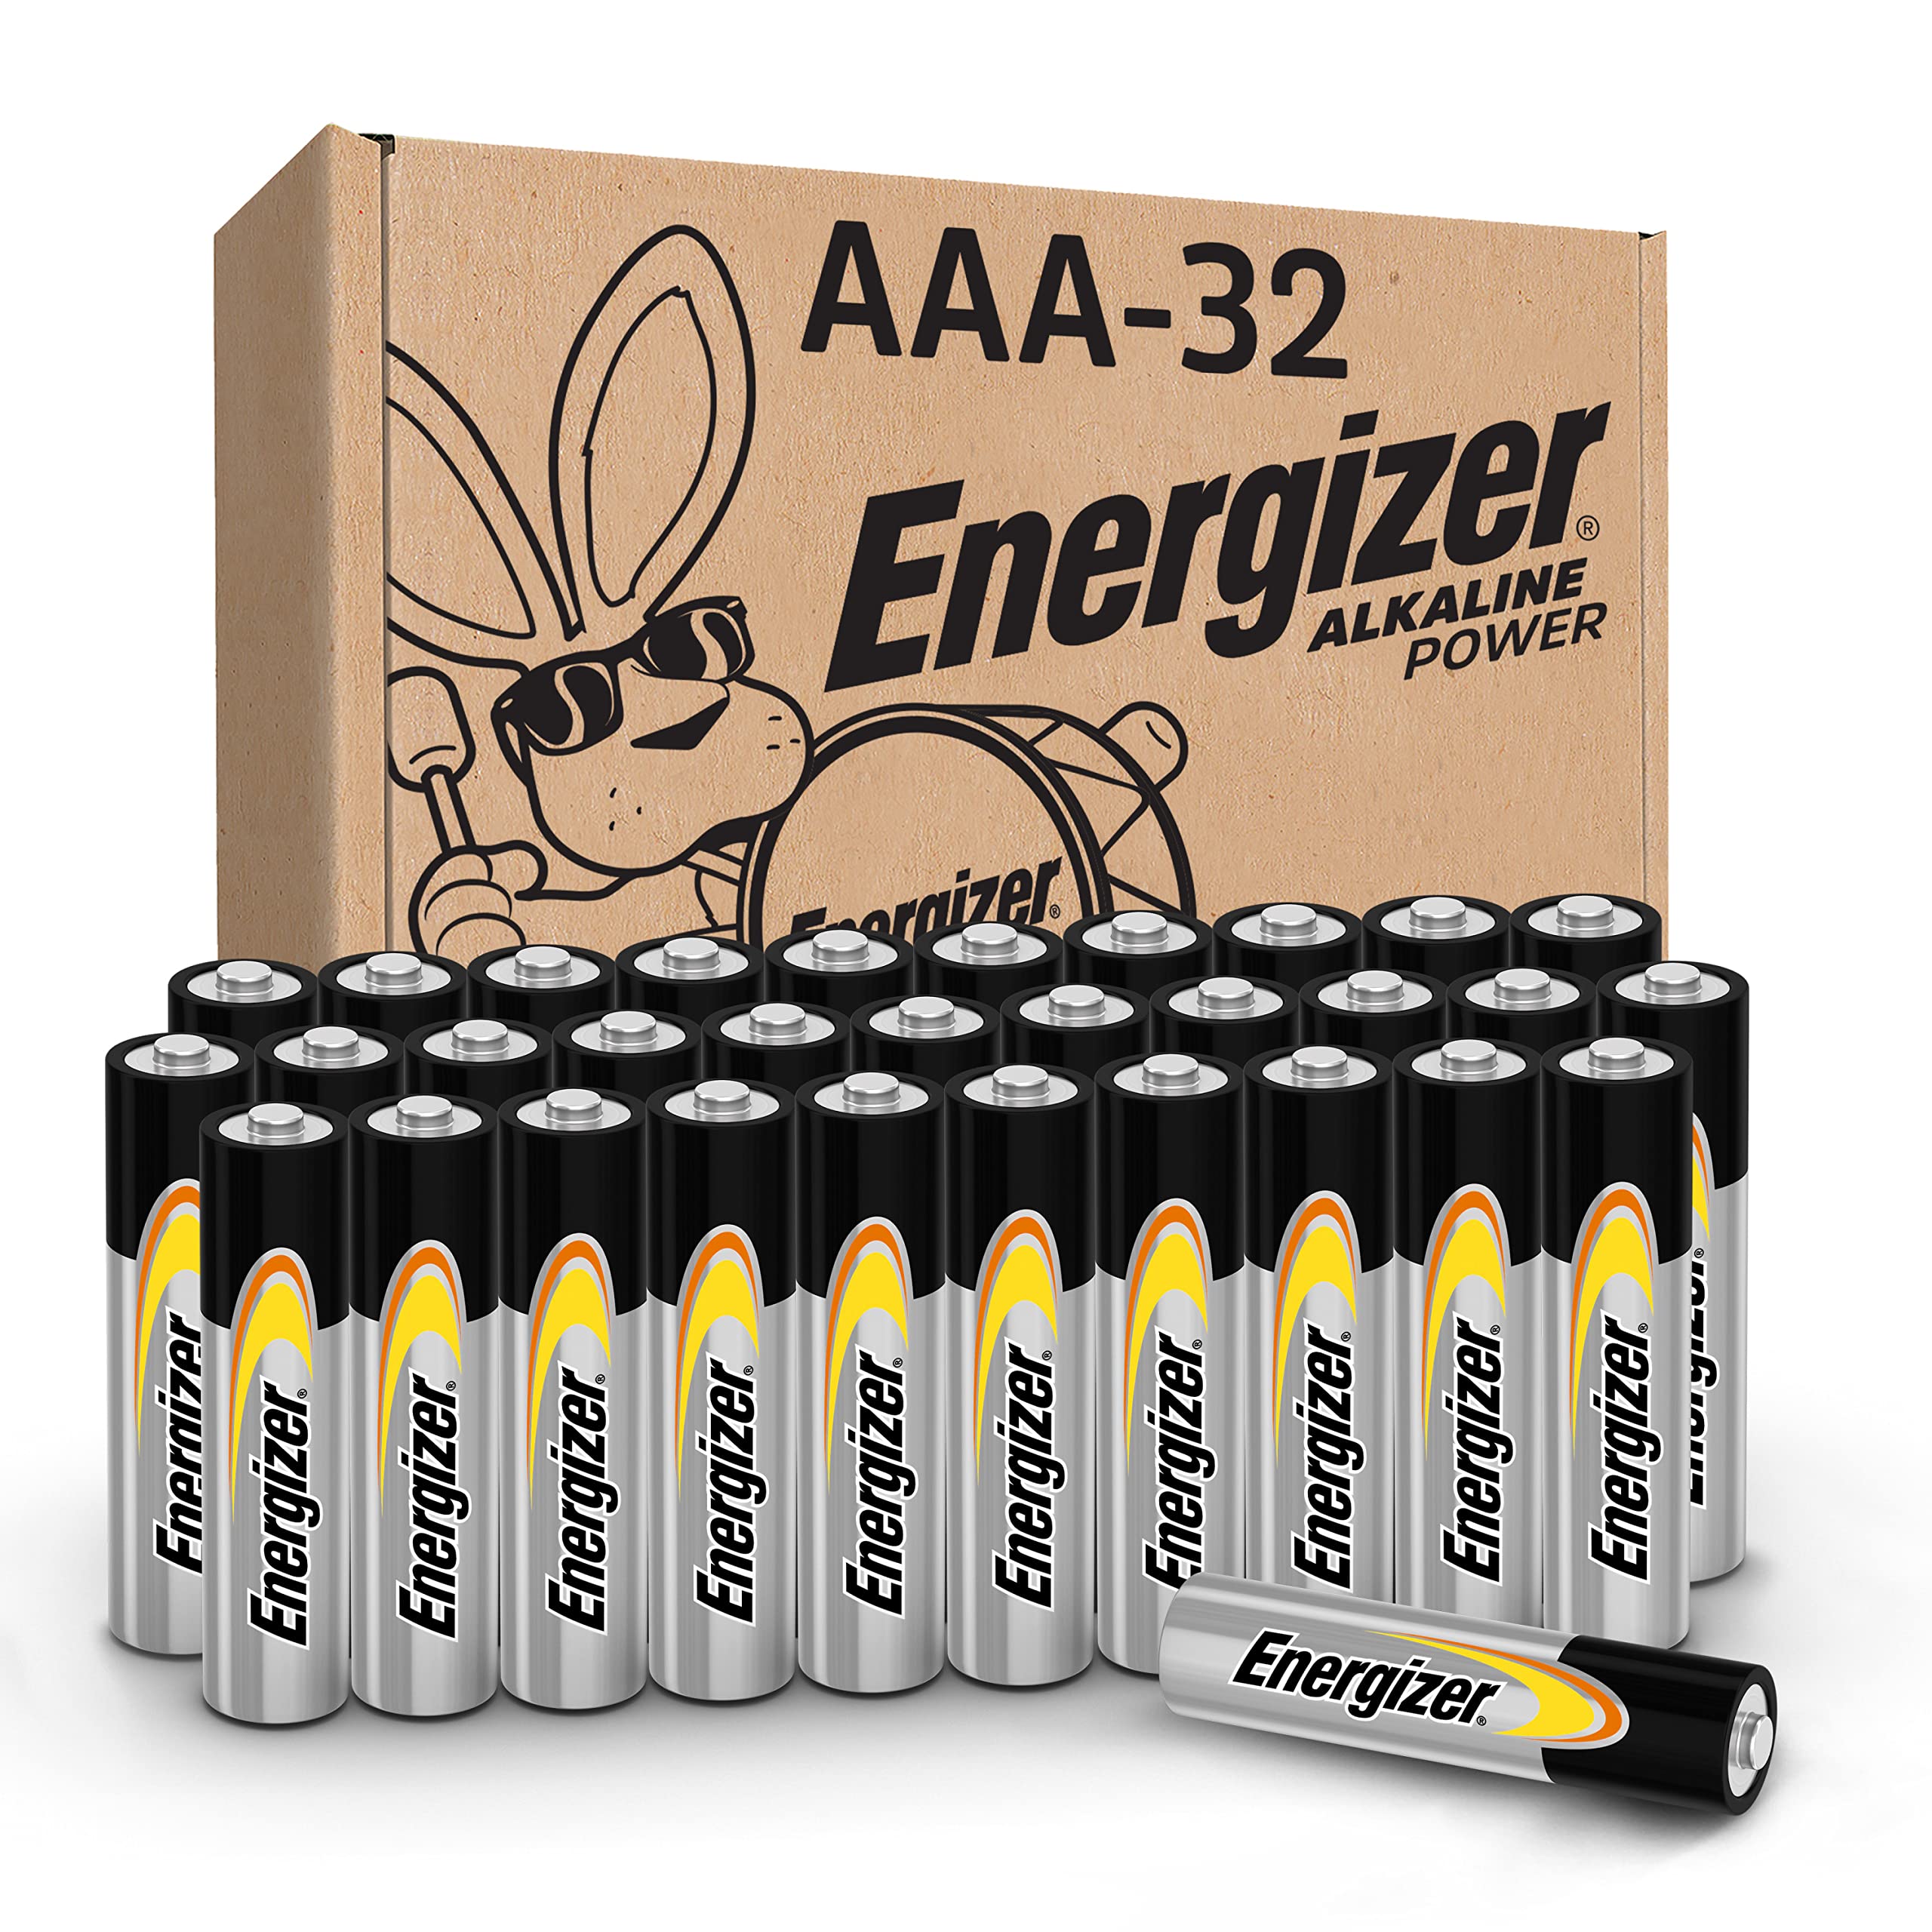 [S&S] $12.25: 32-Count Energizer Alkaline AAA Batteries